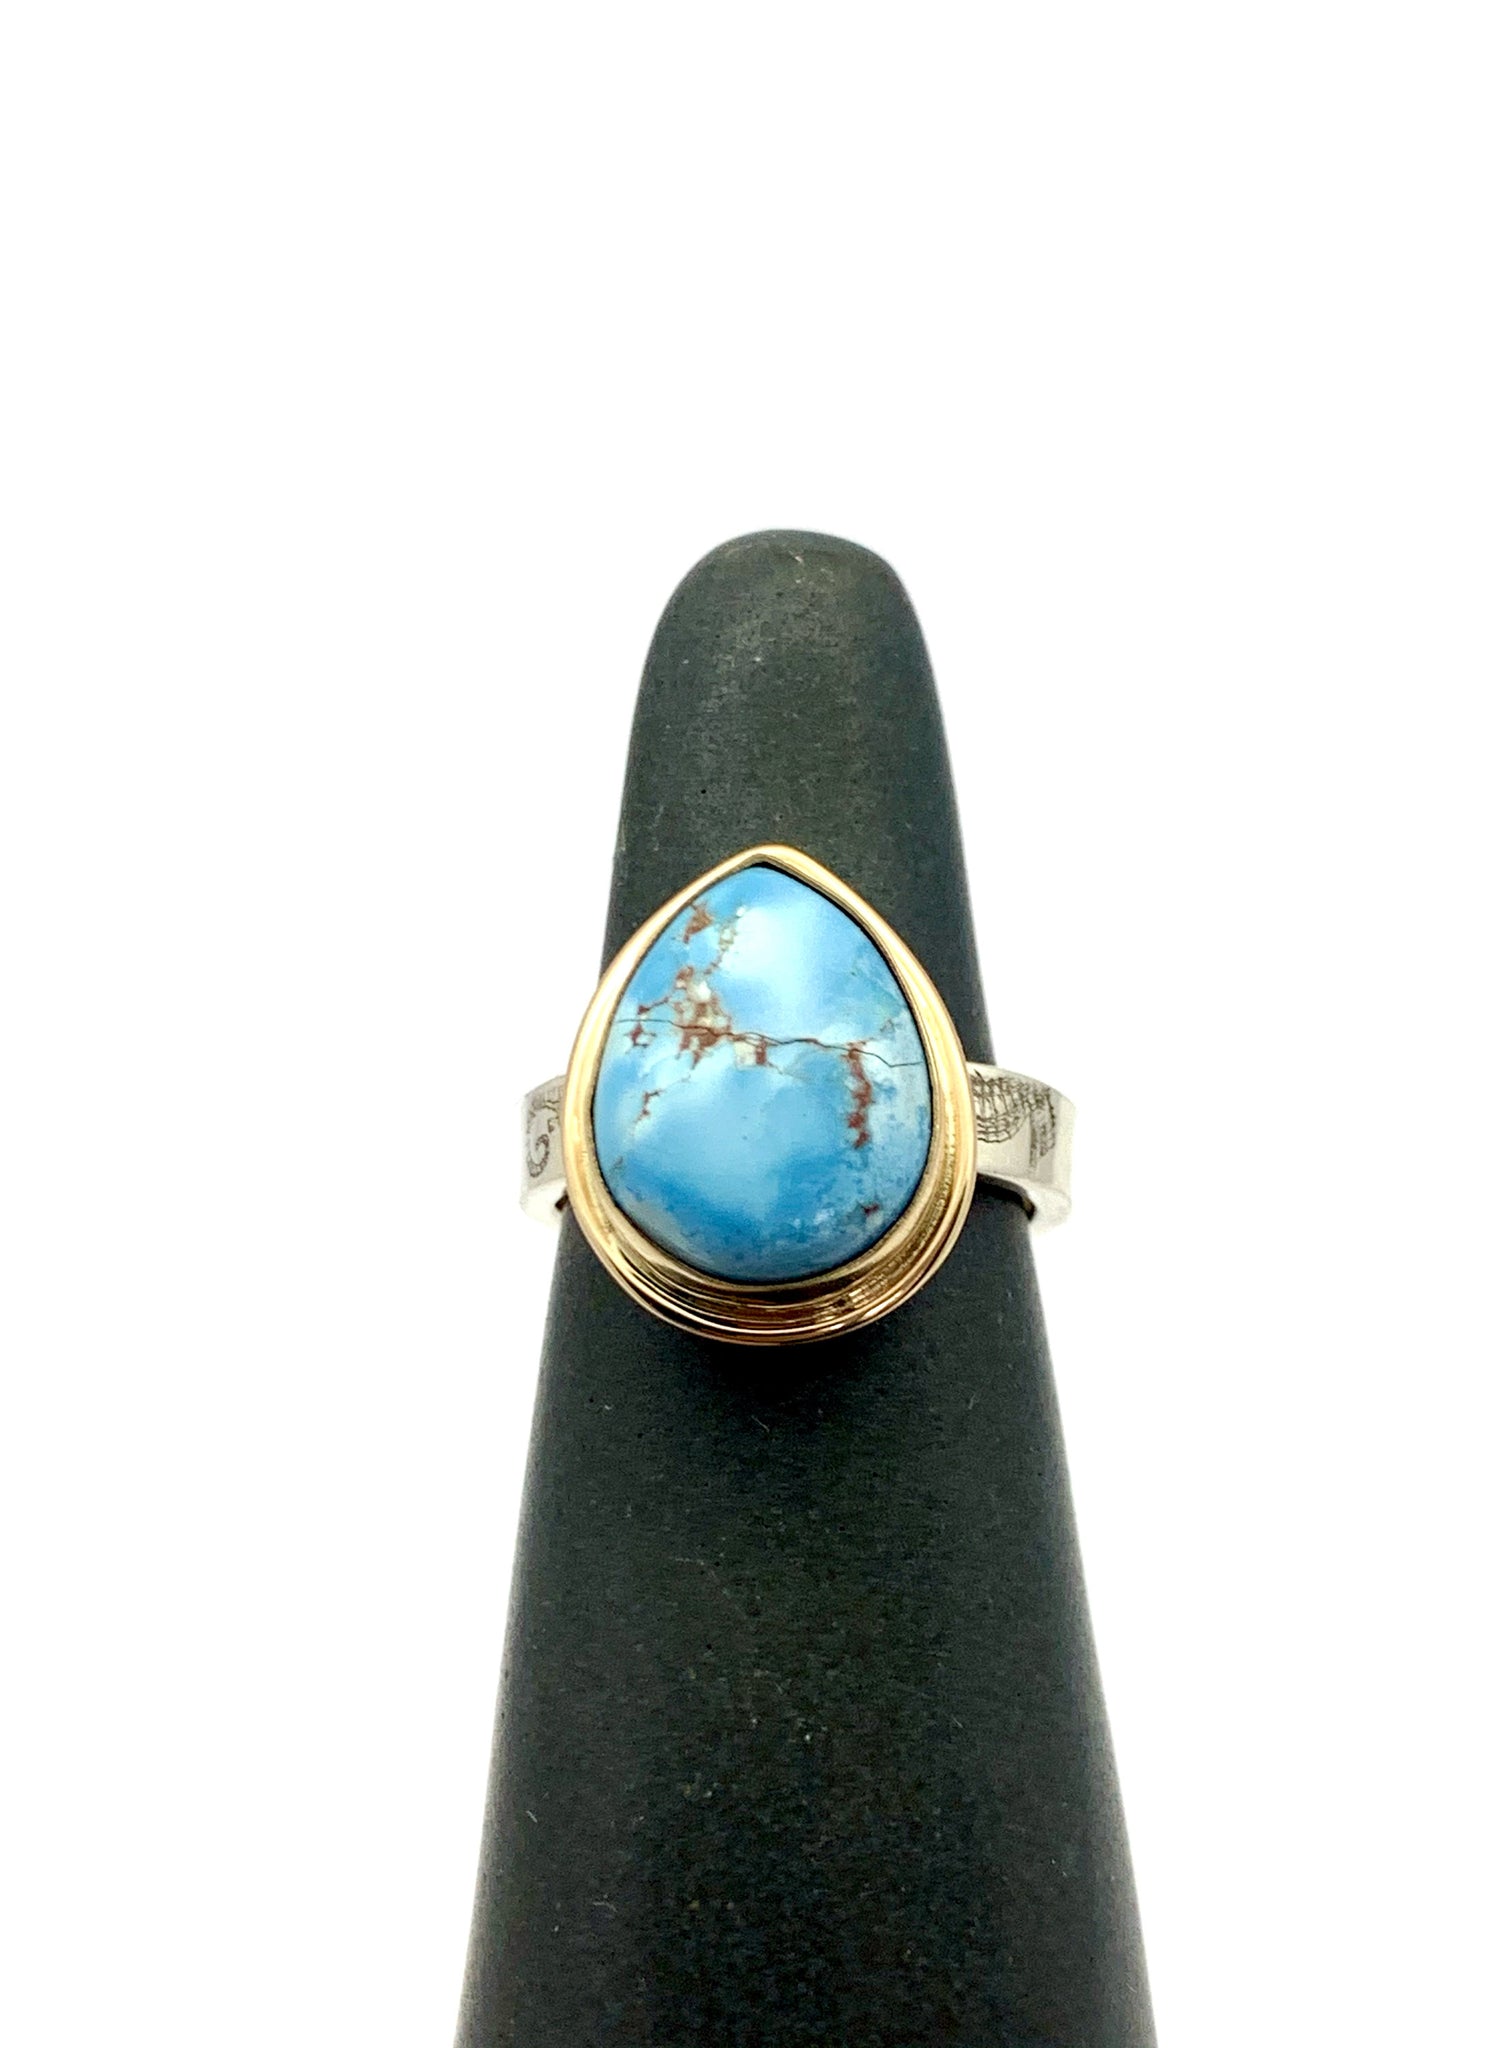 Kazakhstan Turquoise ring, Lavender Turquoise ring, Golden Hills Turquoise Ring, Turquoise Statement Ring, Boho Ring